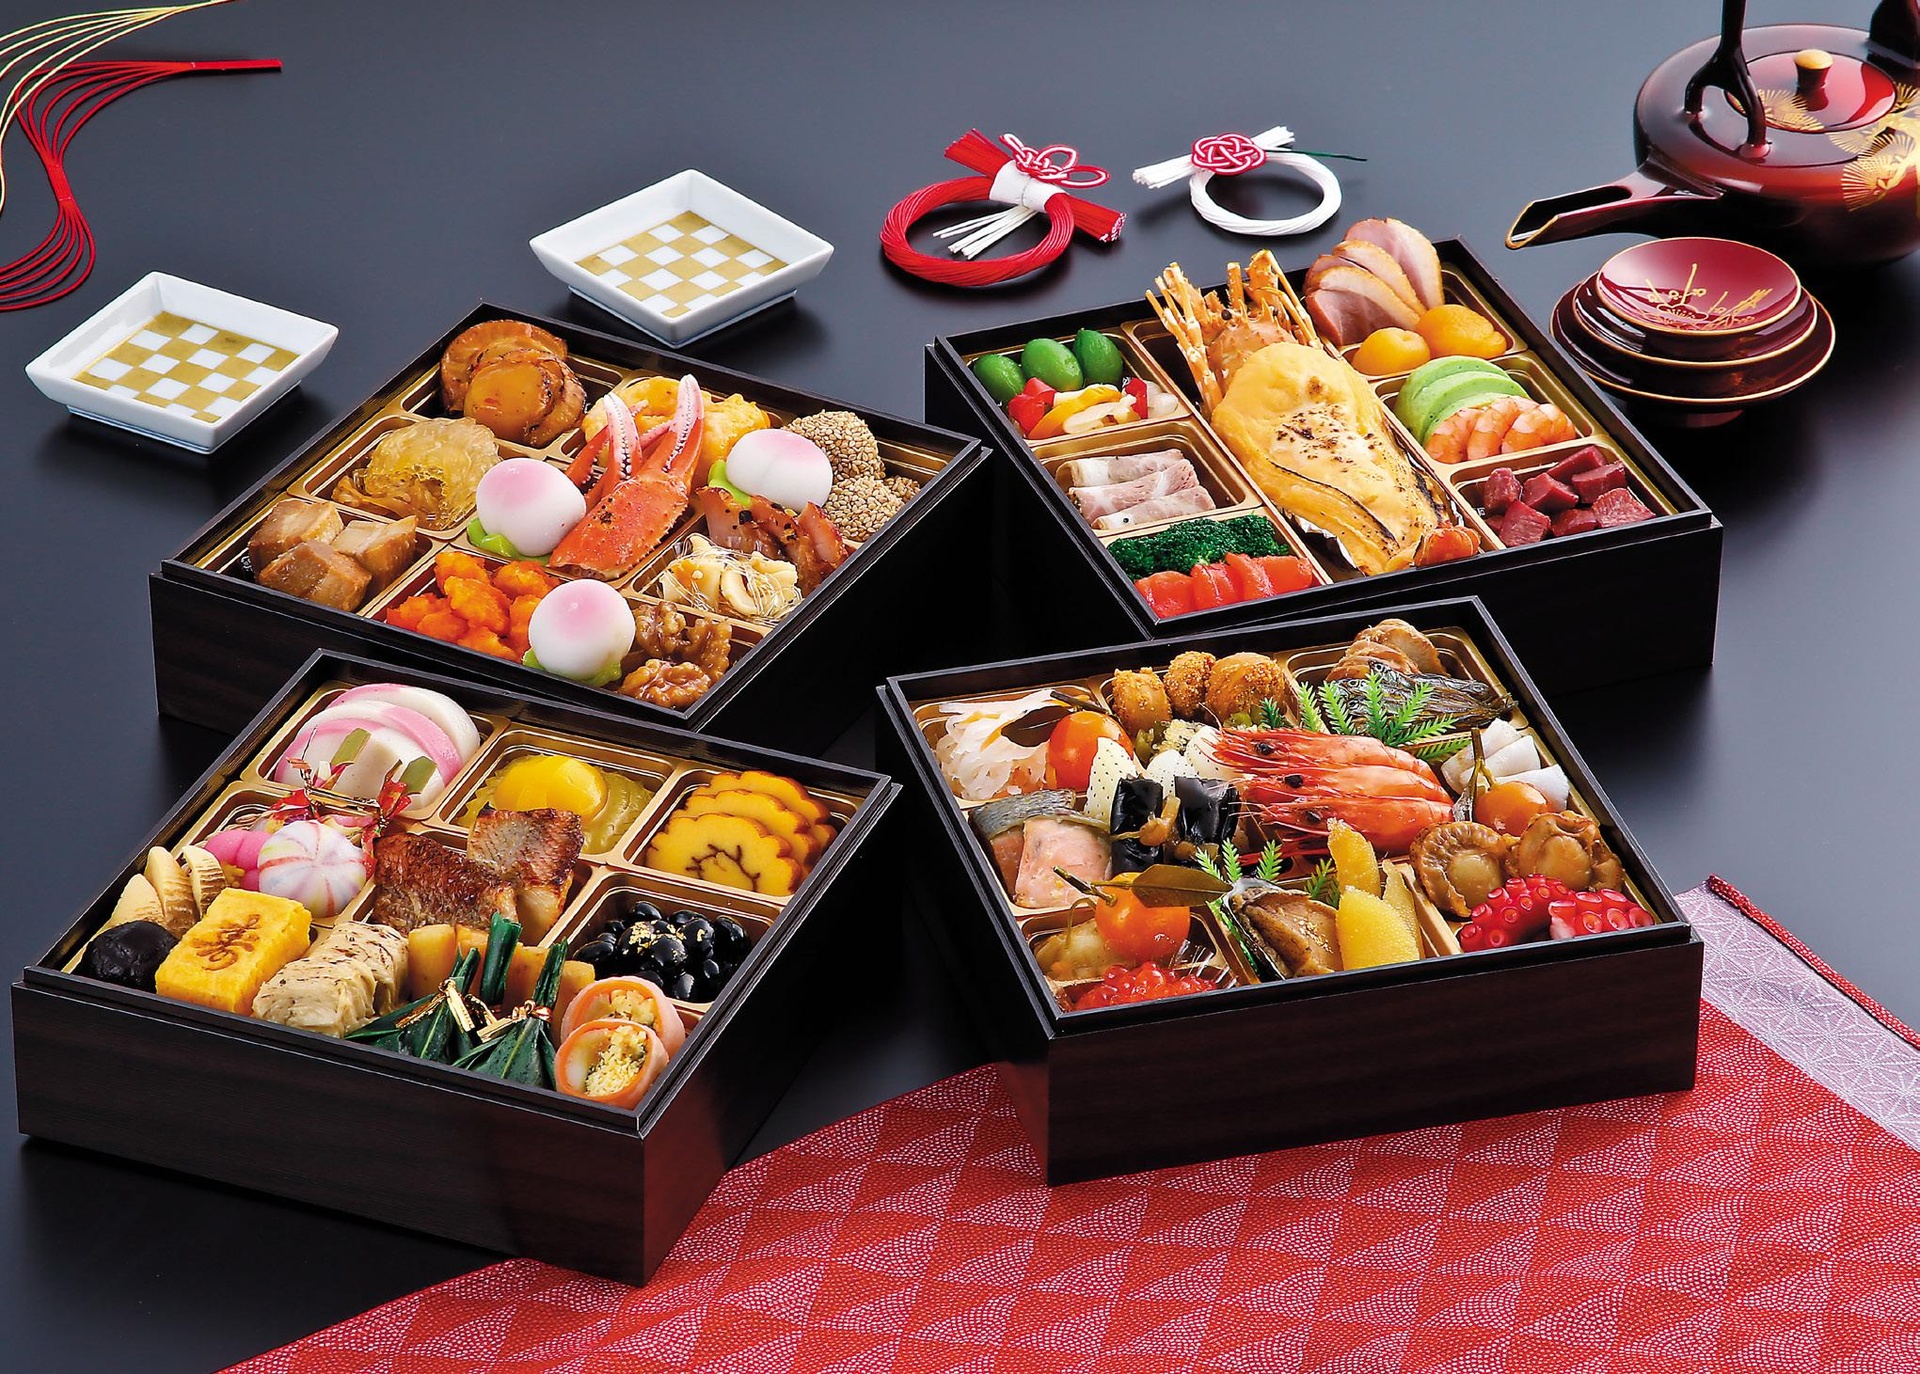 Chùm ảnh: Ý nghĩa các món ăn trong hộp cơm năm mới của người Nhật